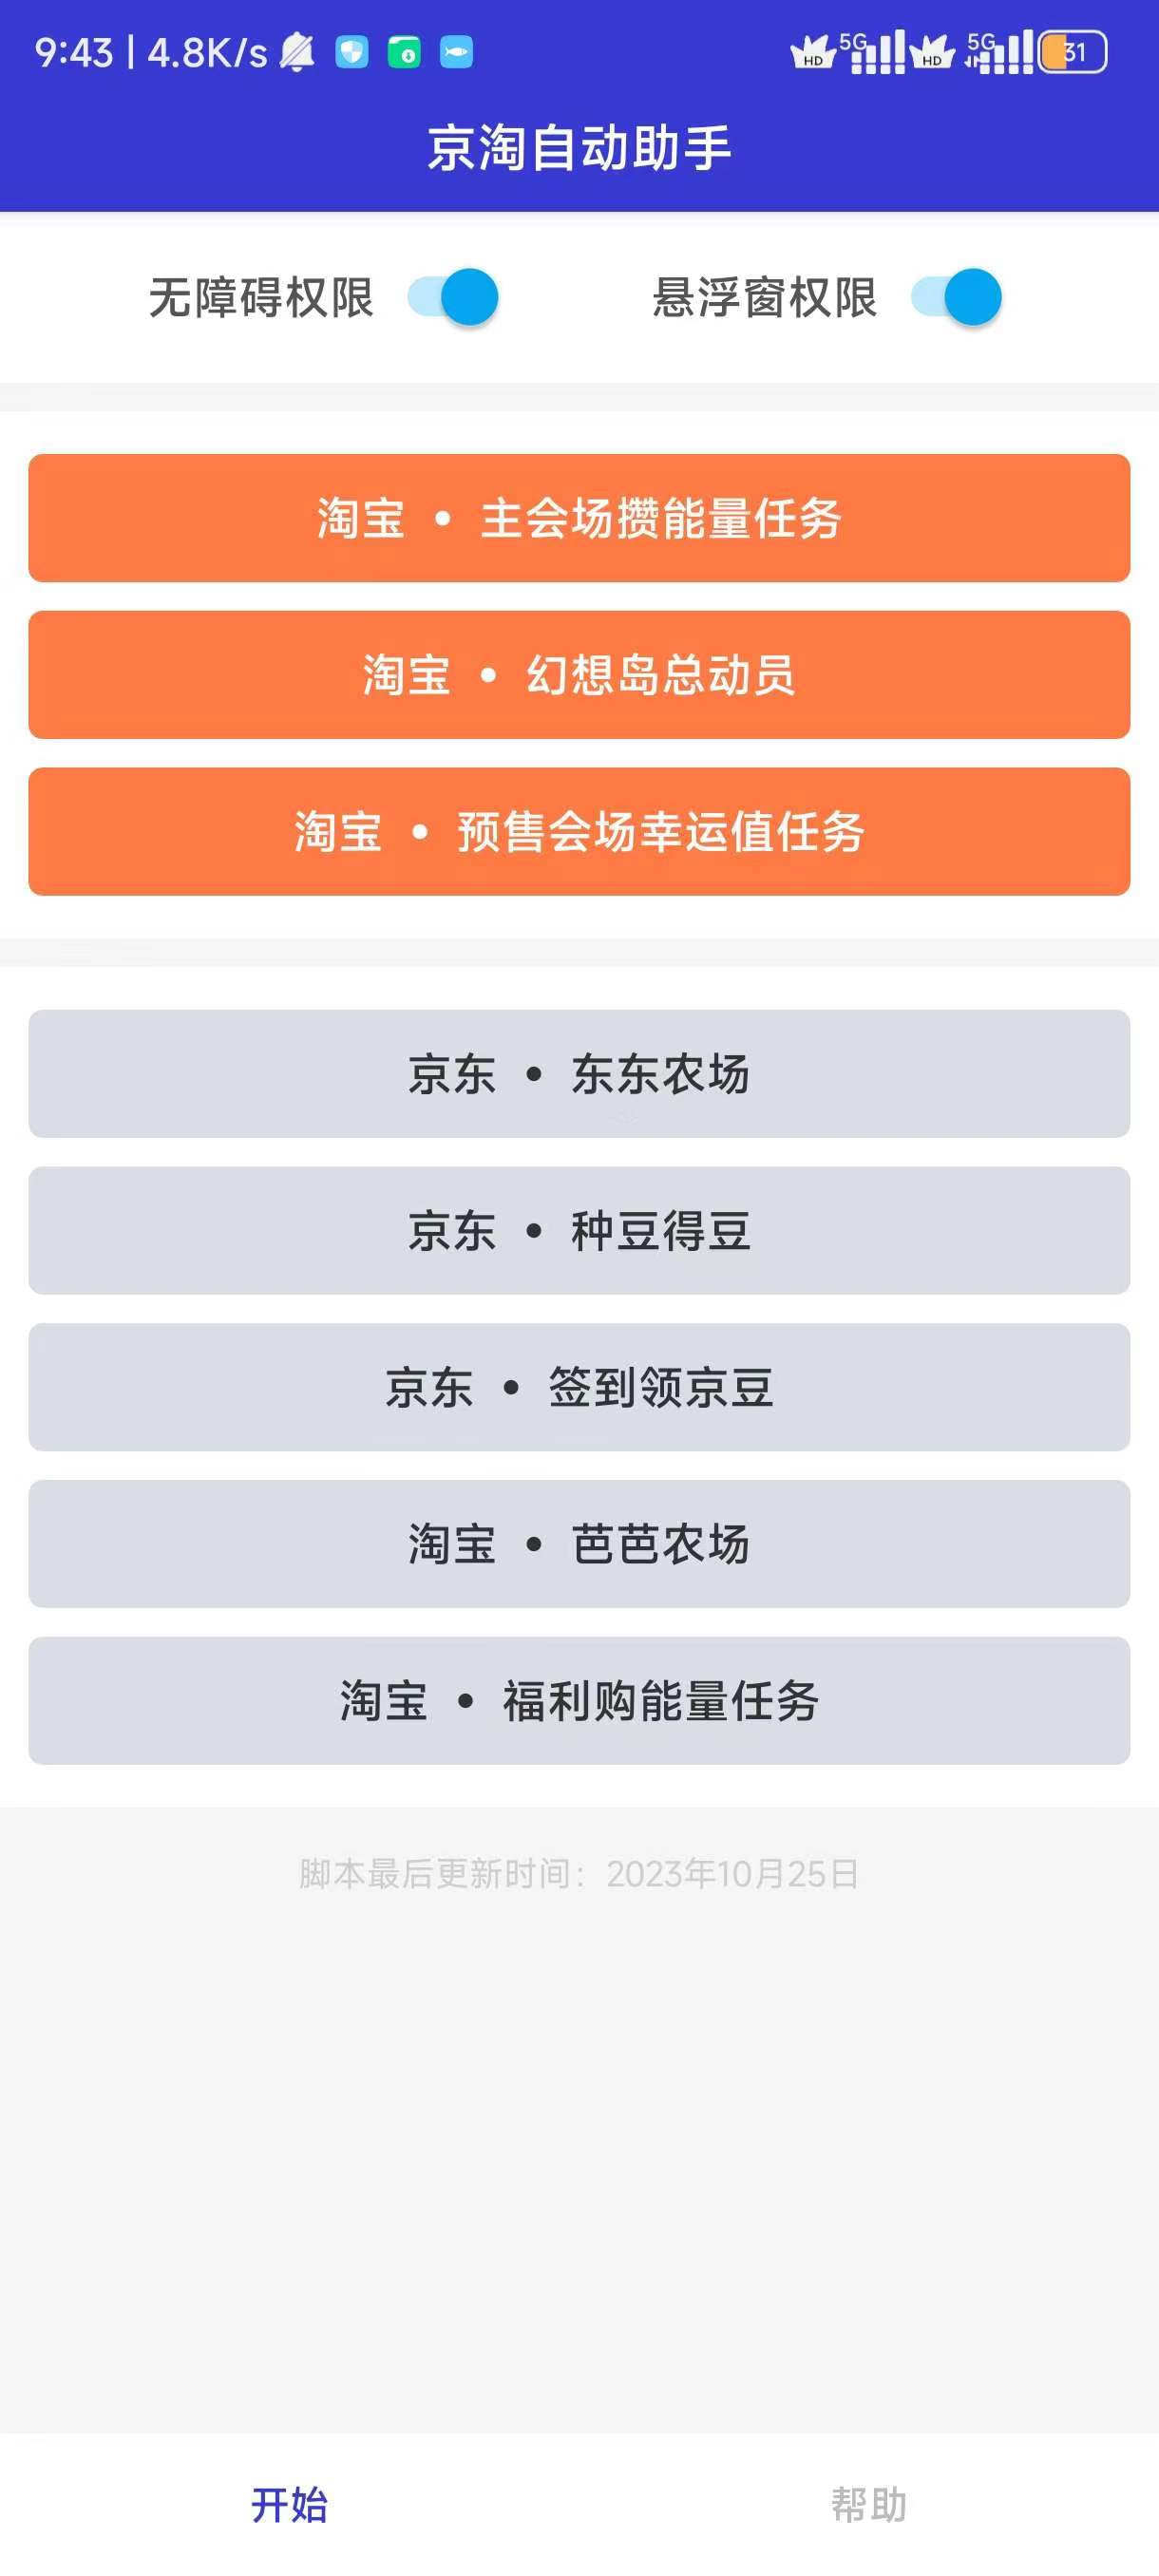 京淘自动助手7.0自动完成双11活动 屠城辅助网www.tcfz1.com388